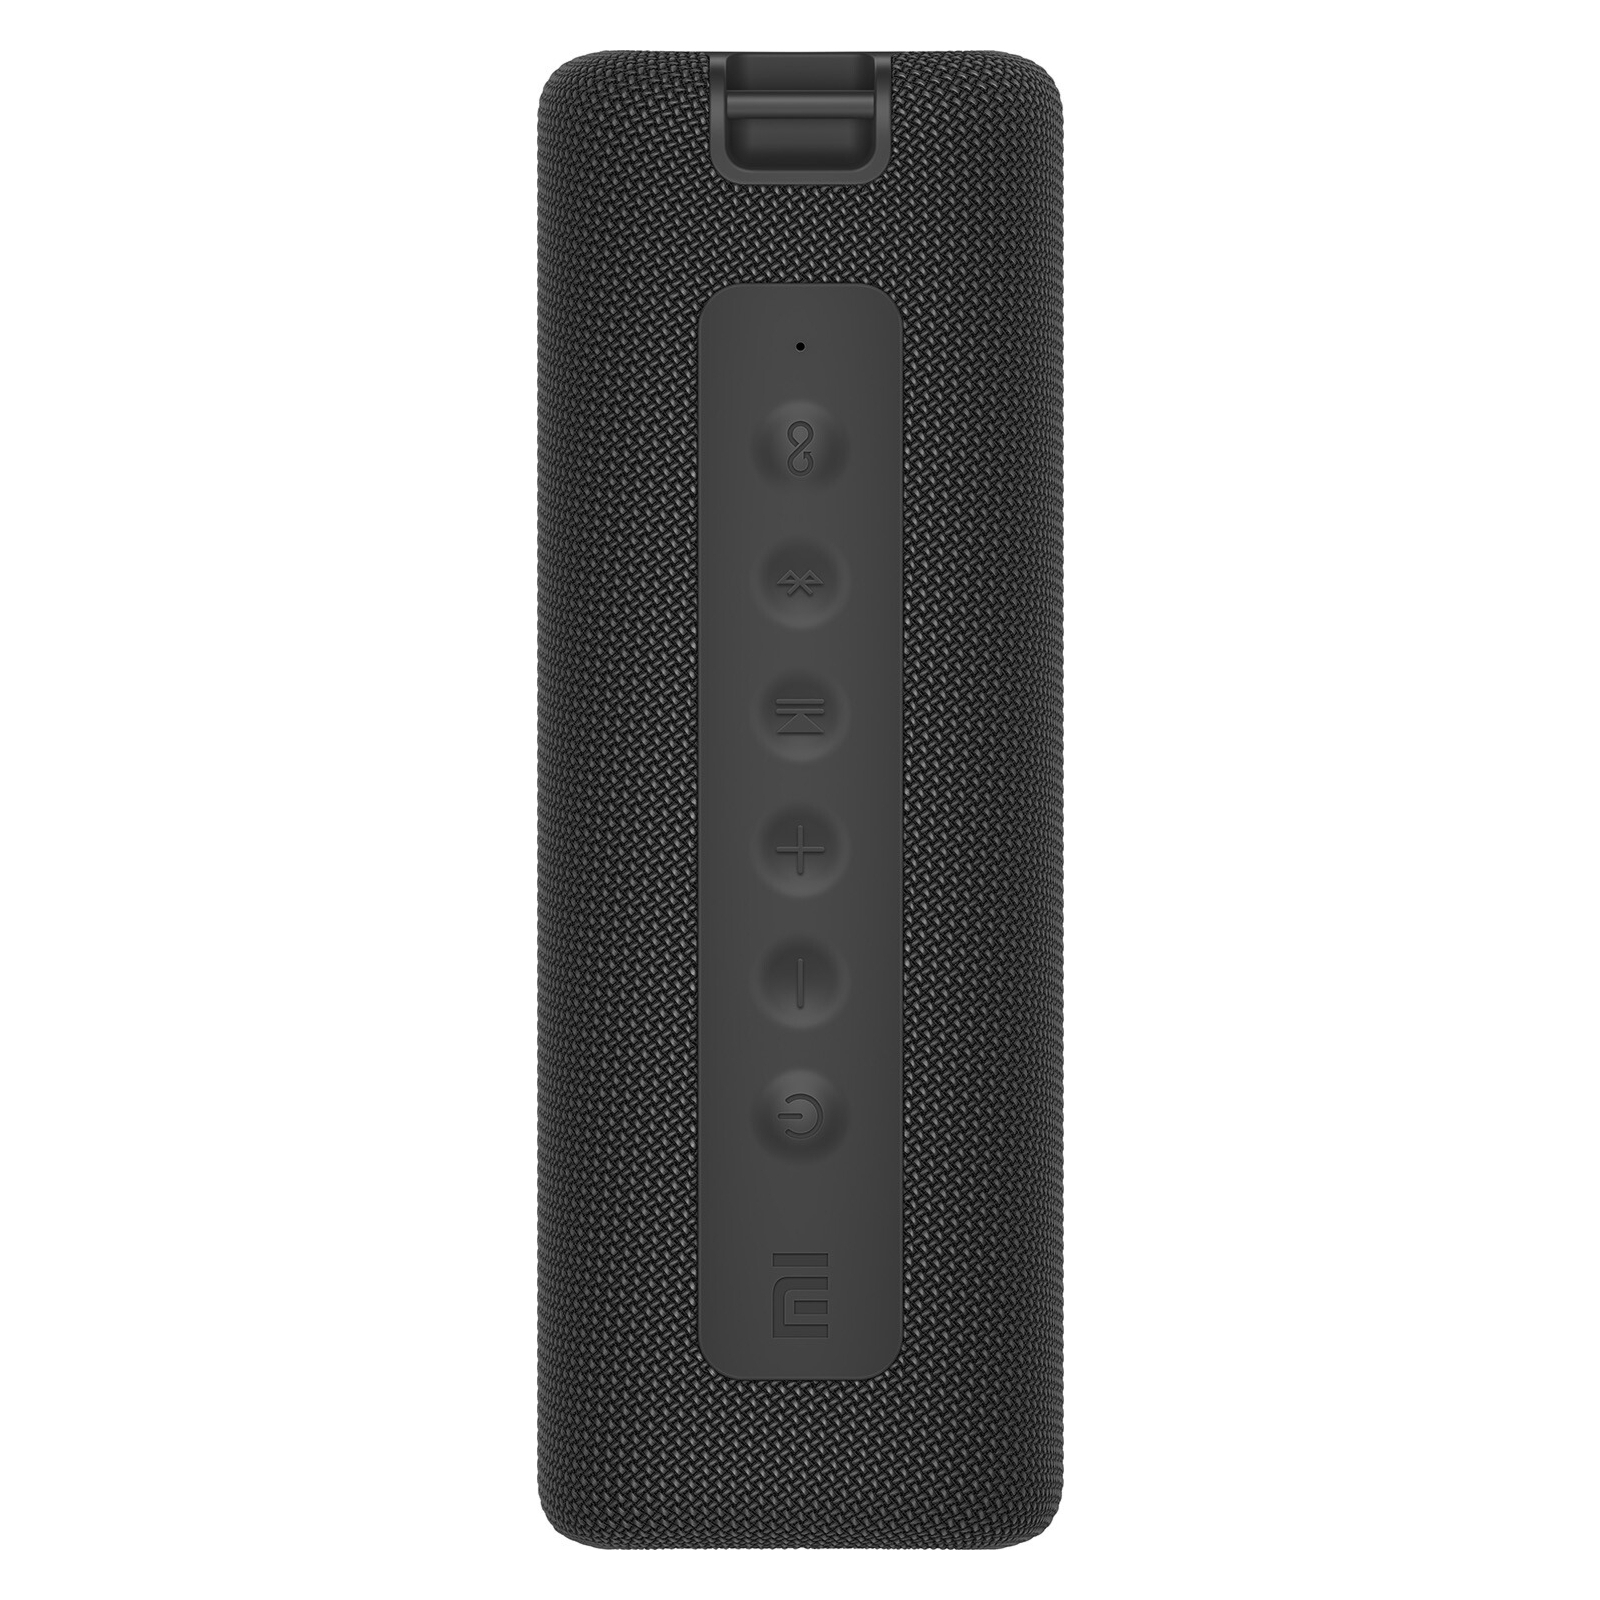 Акустическая система Xiaomi Mi Portable Bluetooth Spearker 16W Black (722031) изображение 3